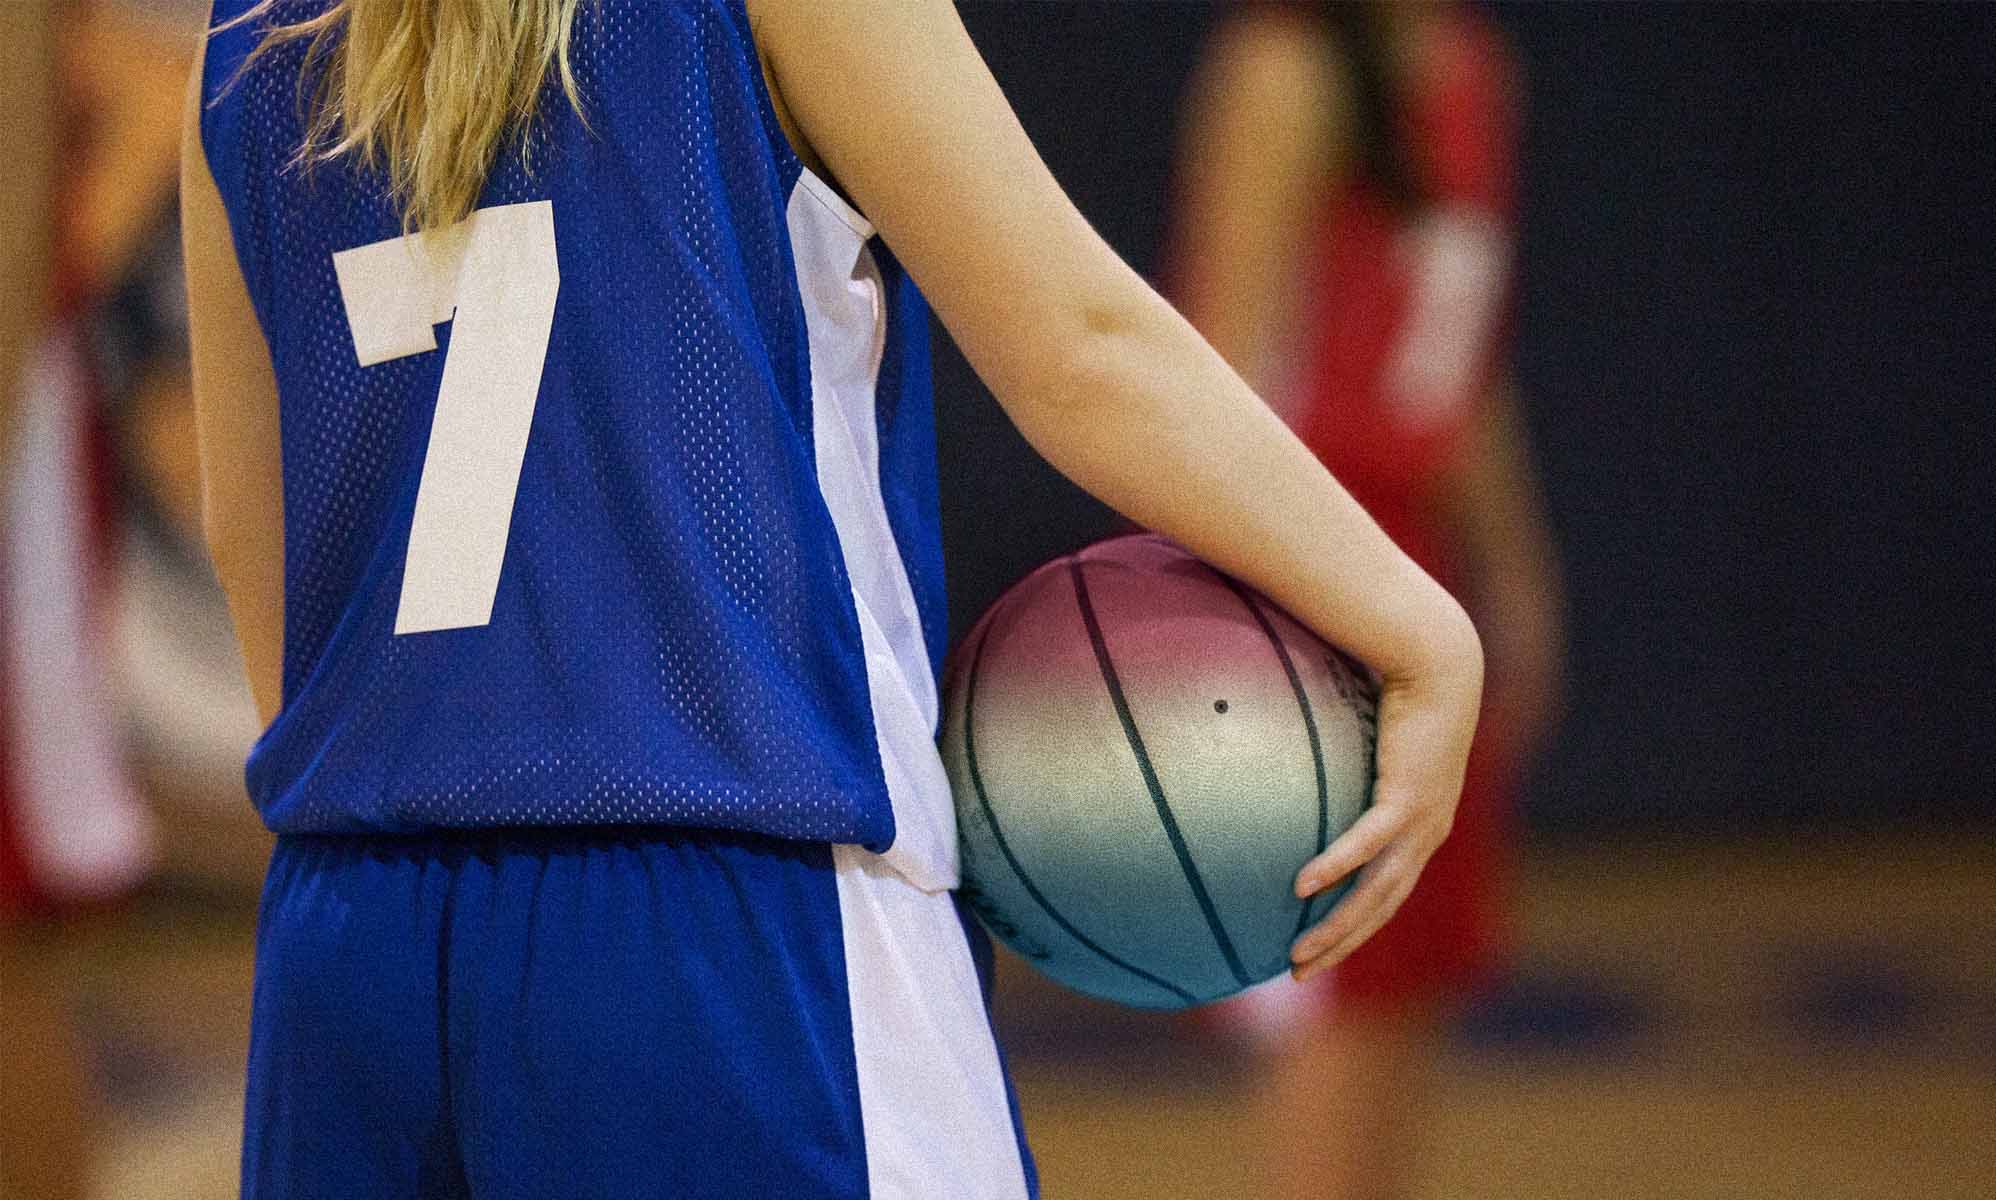 Un colegio femenino se niega a competir contra un equipo de baloncesto con una jugadoratrans